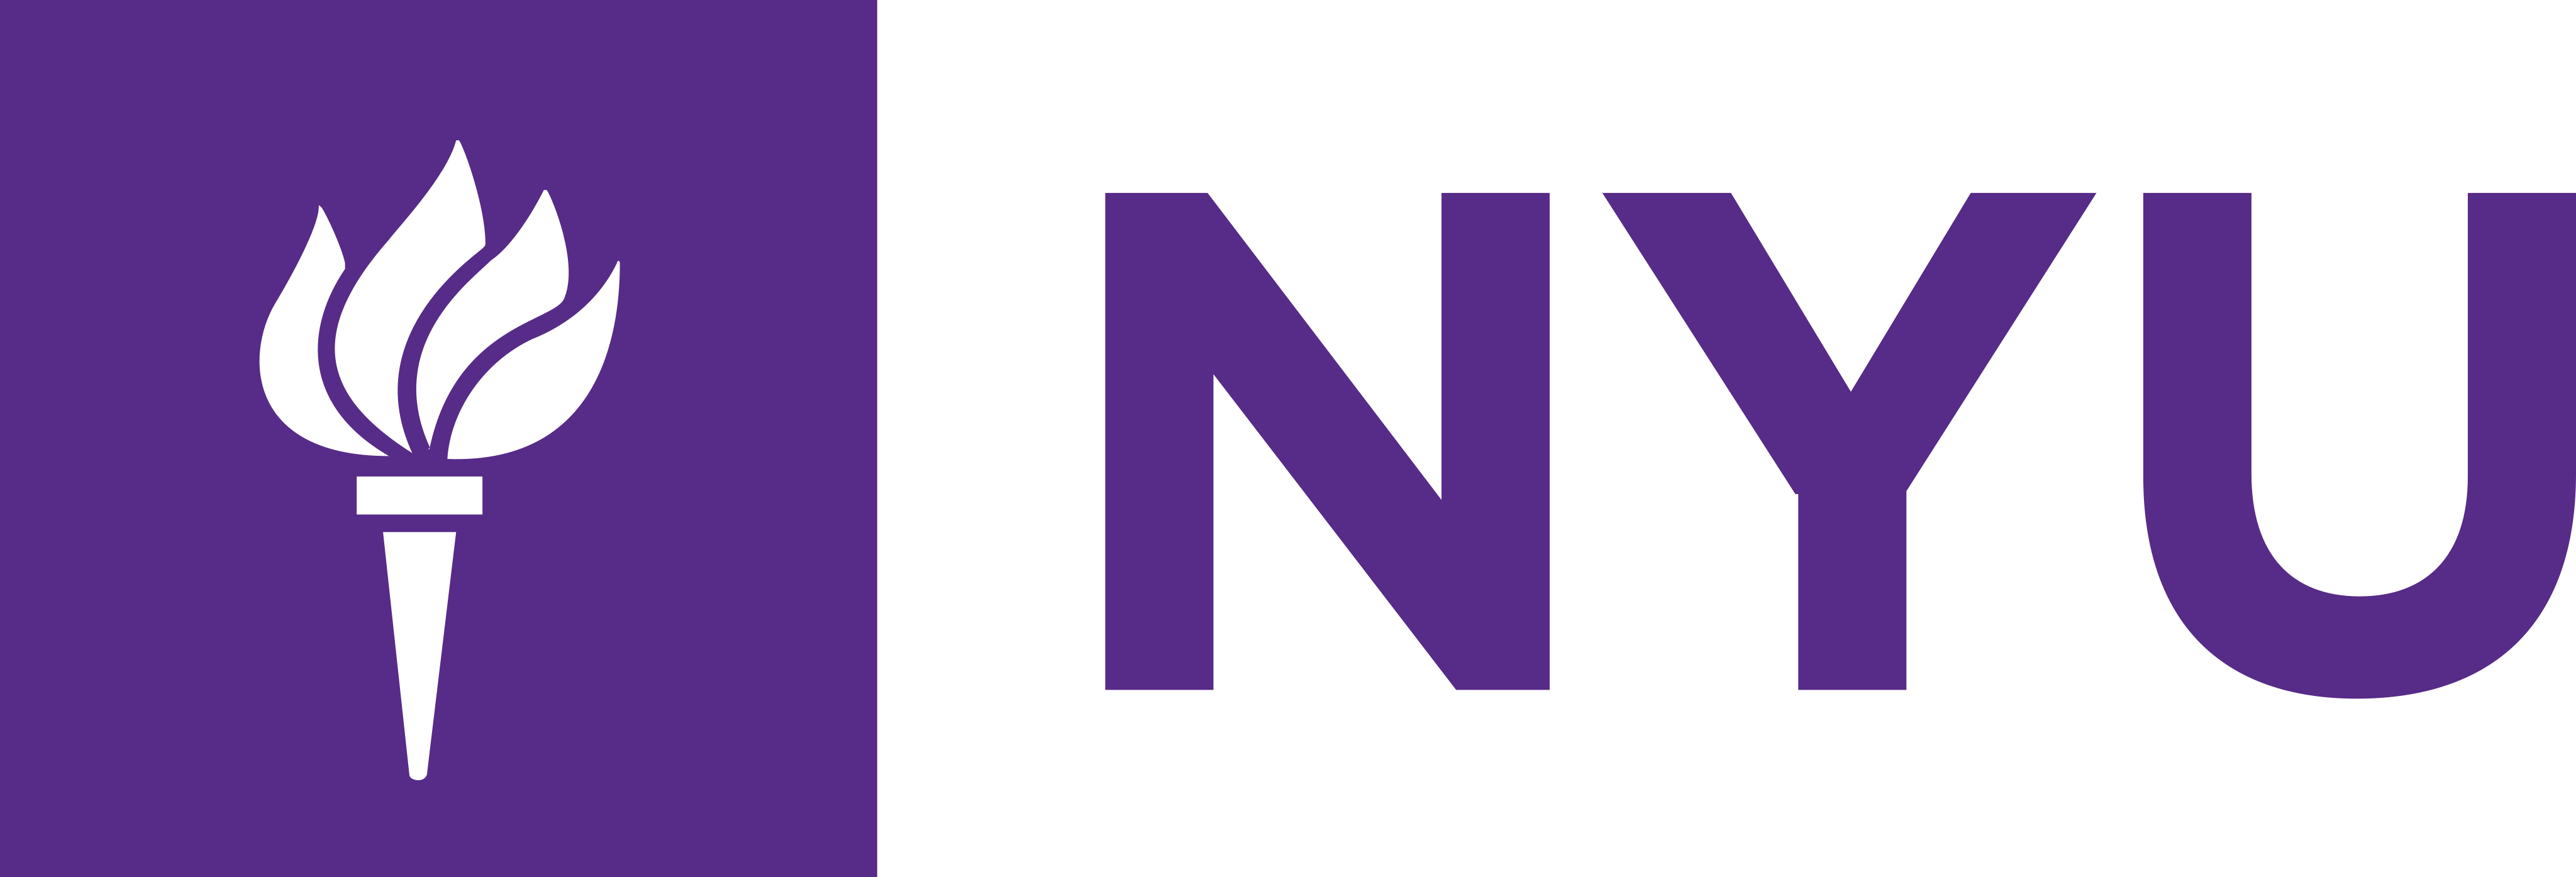 Логотип NYU – Логотип Нью-Йоркського університету – PNG і вектор – Завантажити логотип